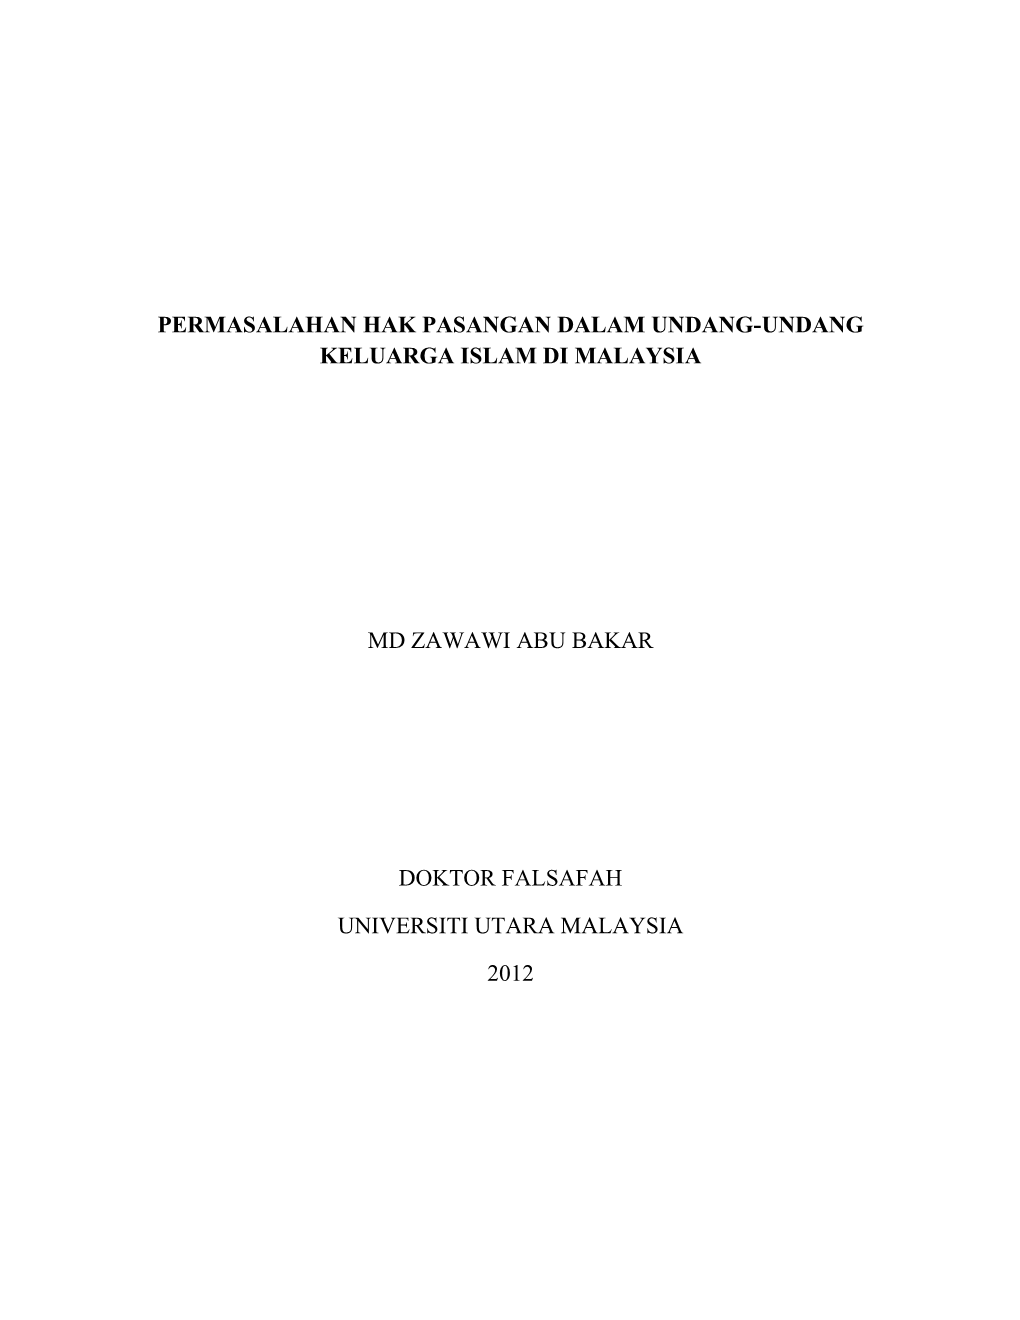 Permasalahan Hak Pasangan Dalam Undang-Undang Keluarga Islam Di Malaysia